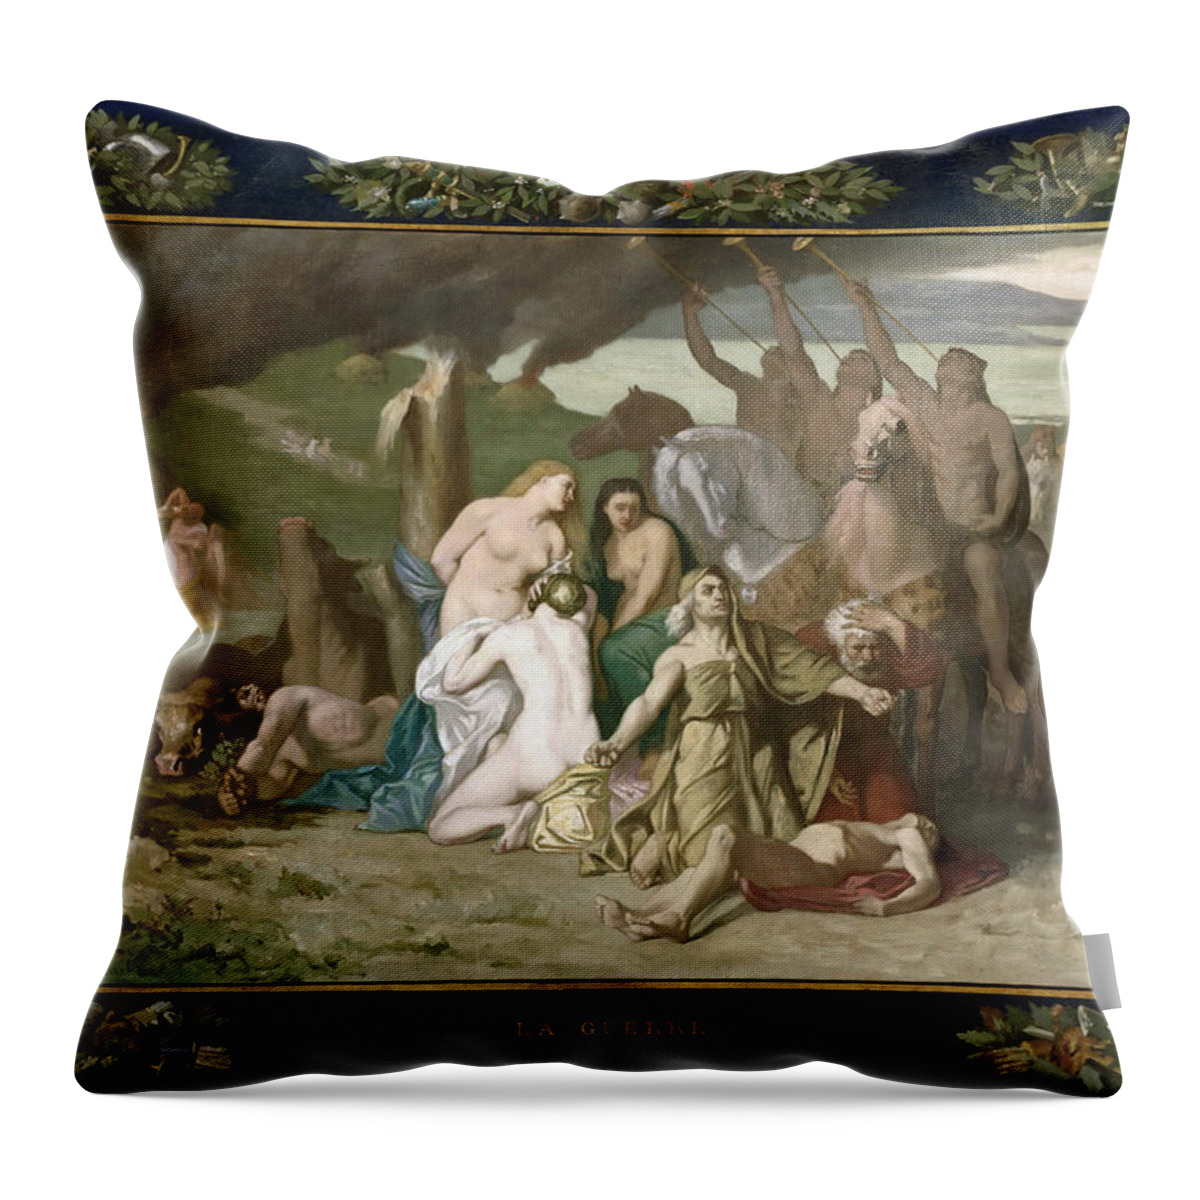 Pierre Puvis De Chavannes Throw Pillow featuring the painting War by Pierre Puvis de Chavannes